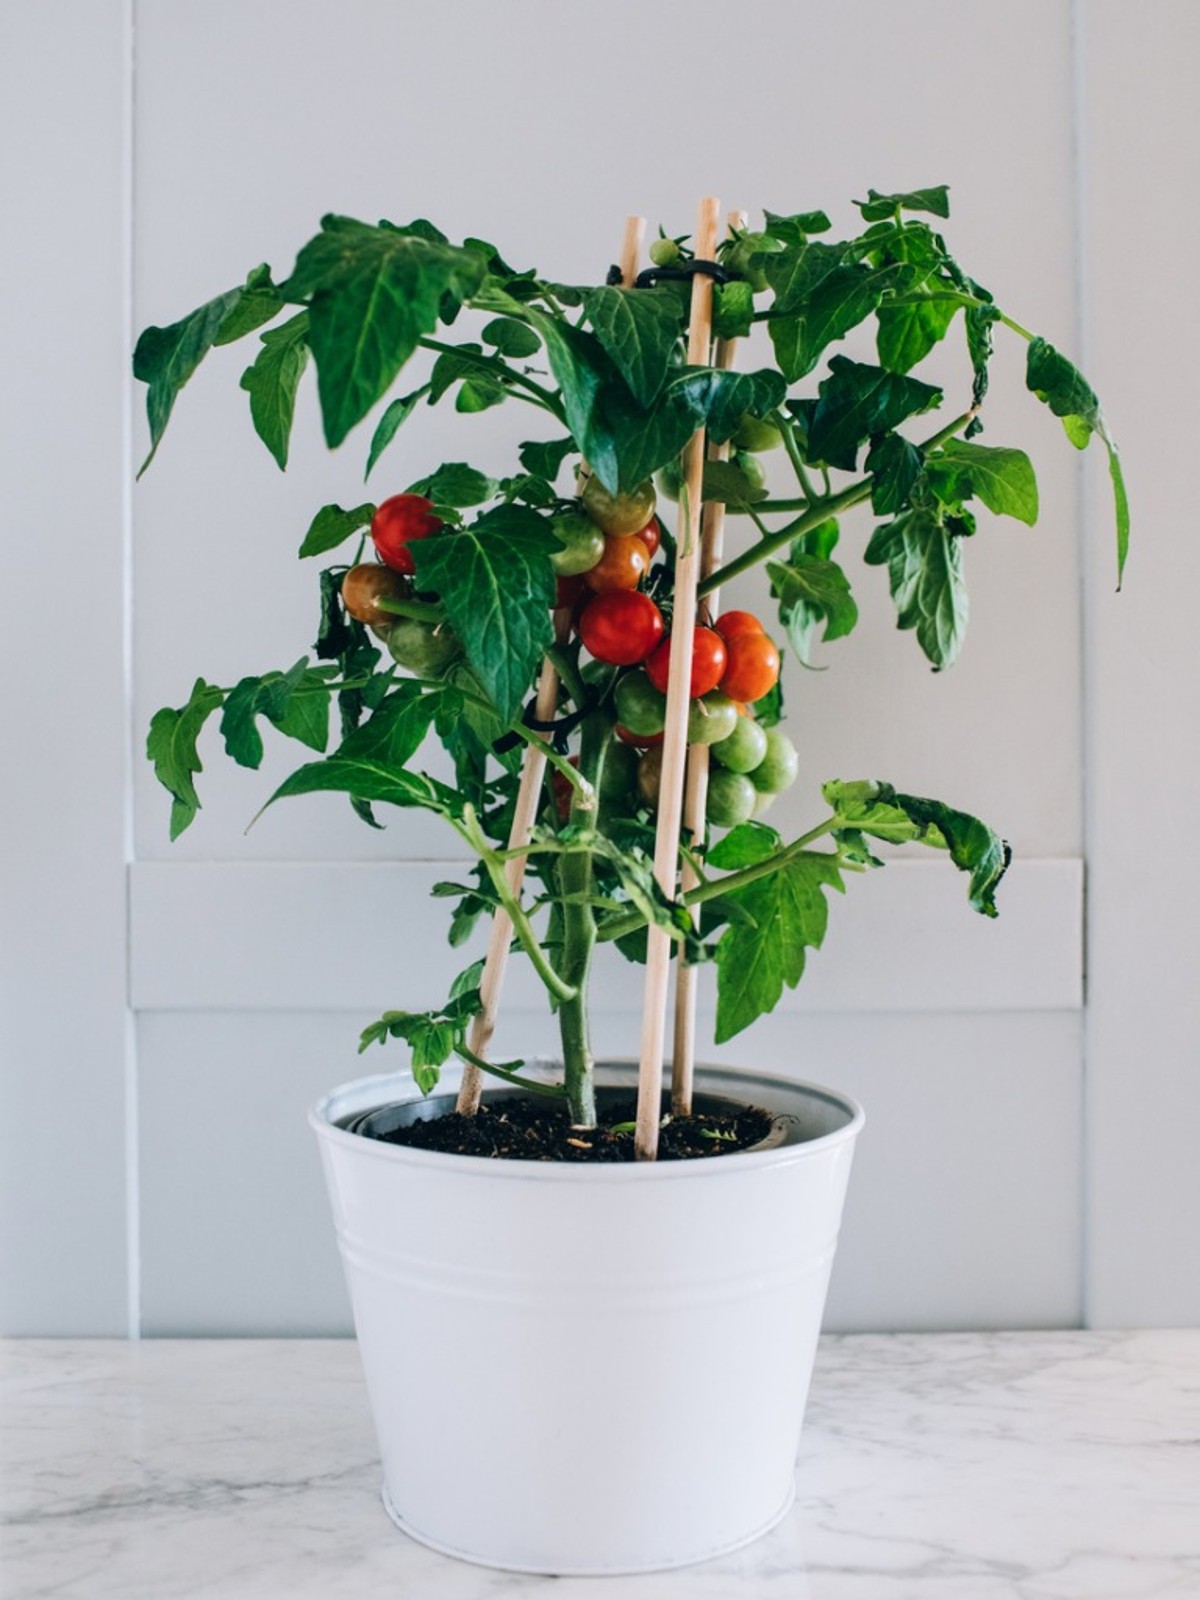 Passo a passo para plantar tomates em vasos